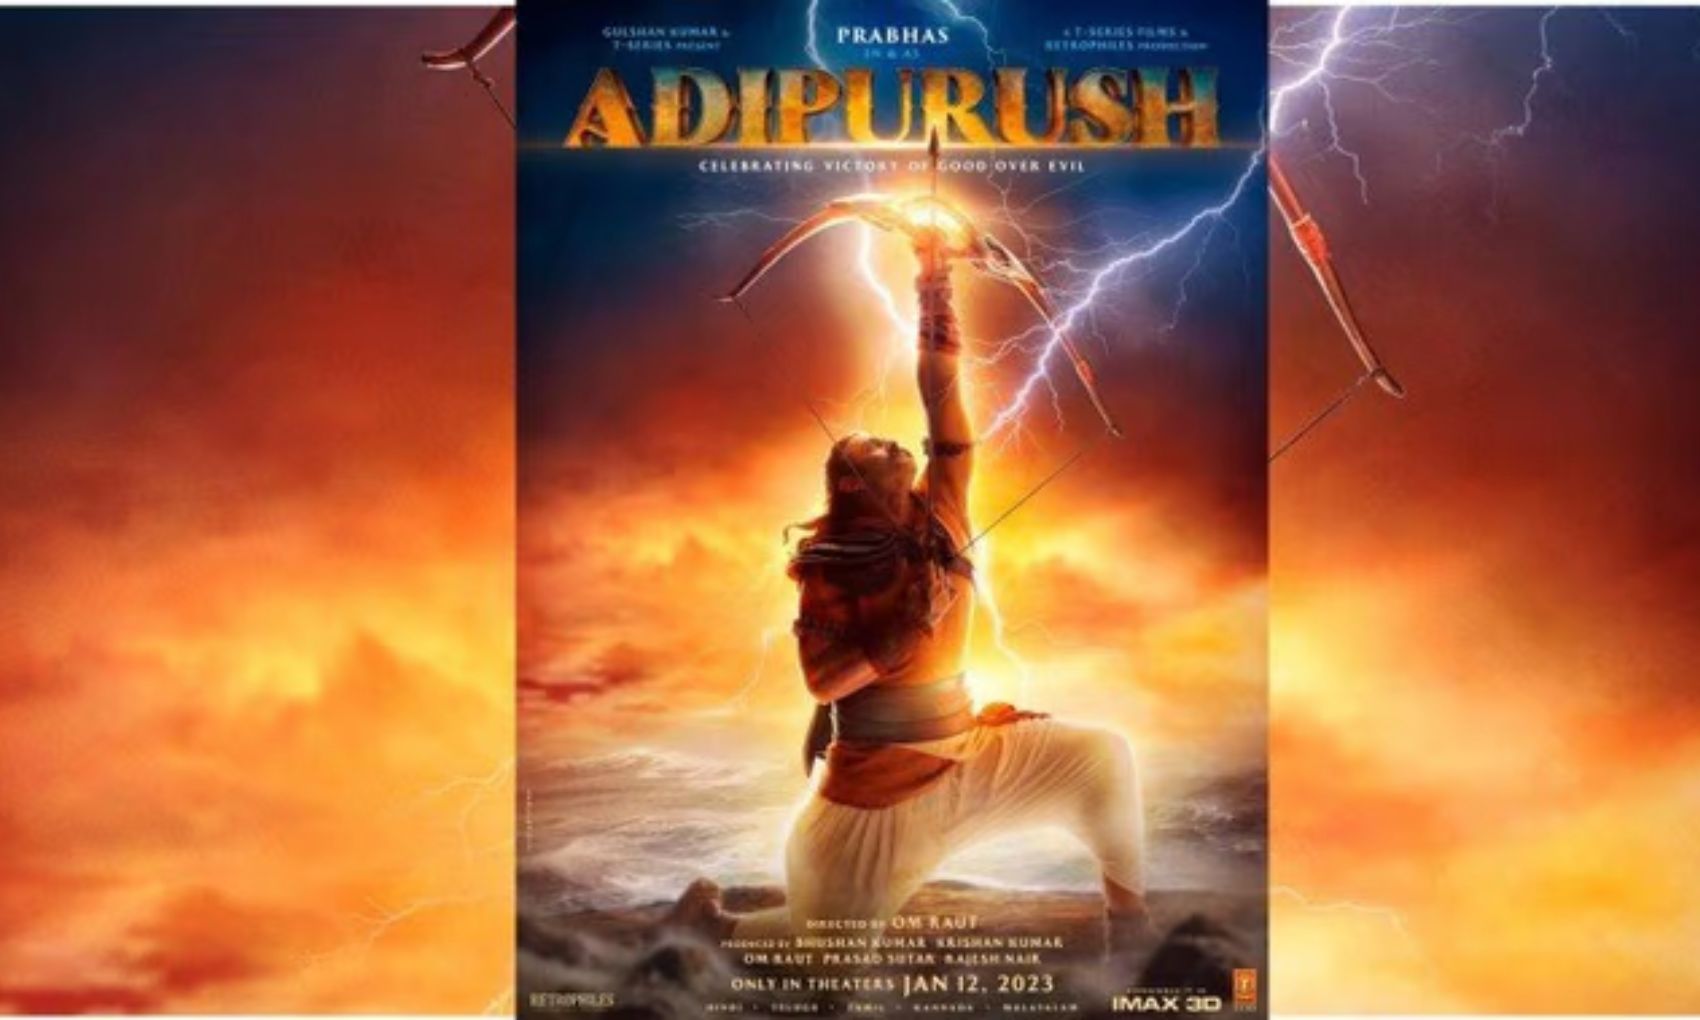 Adipurush: सामने आया आदिपुरुष का फर्स्ट लुक पोस्टर, राम के अवतार में छाए प्रभास